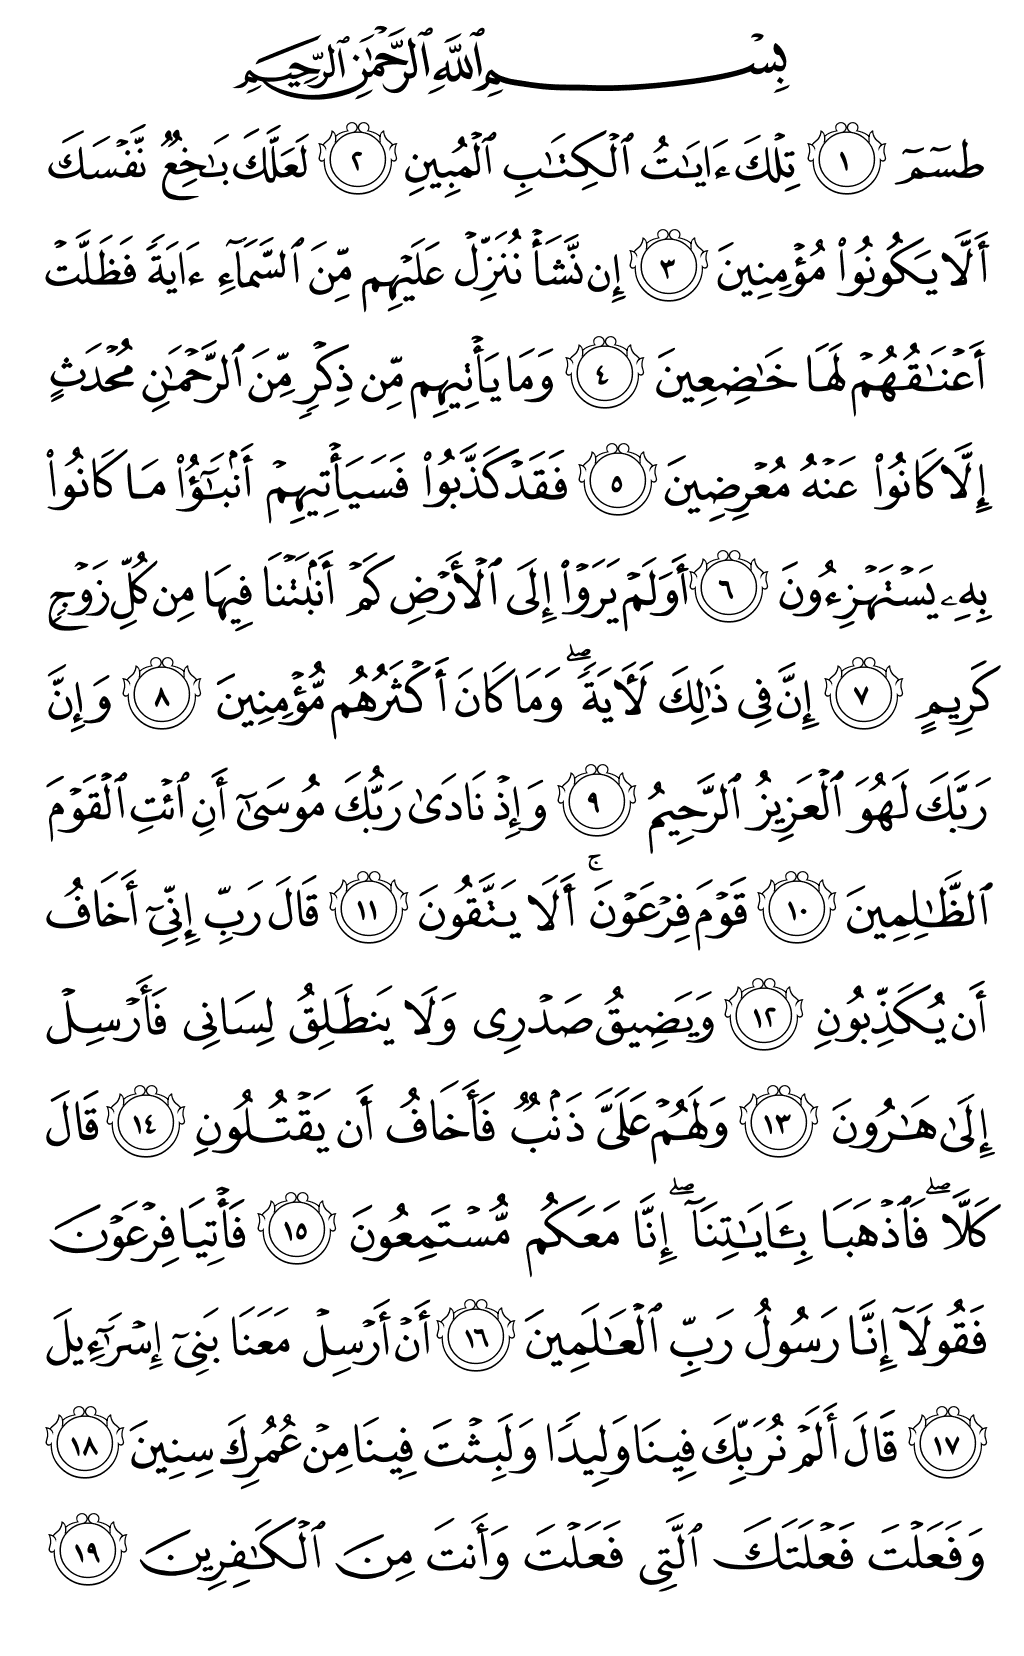 الصفحة رقم 367 من القرآن الكريم